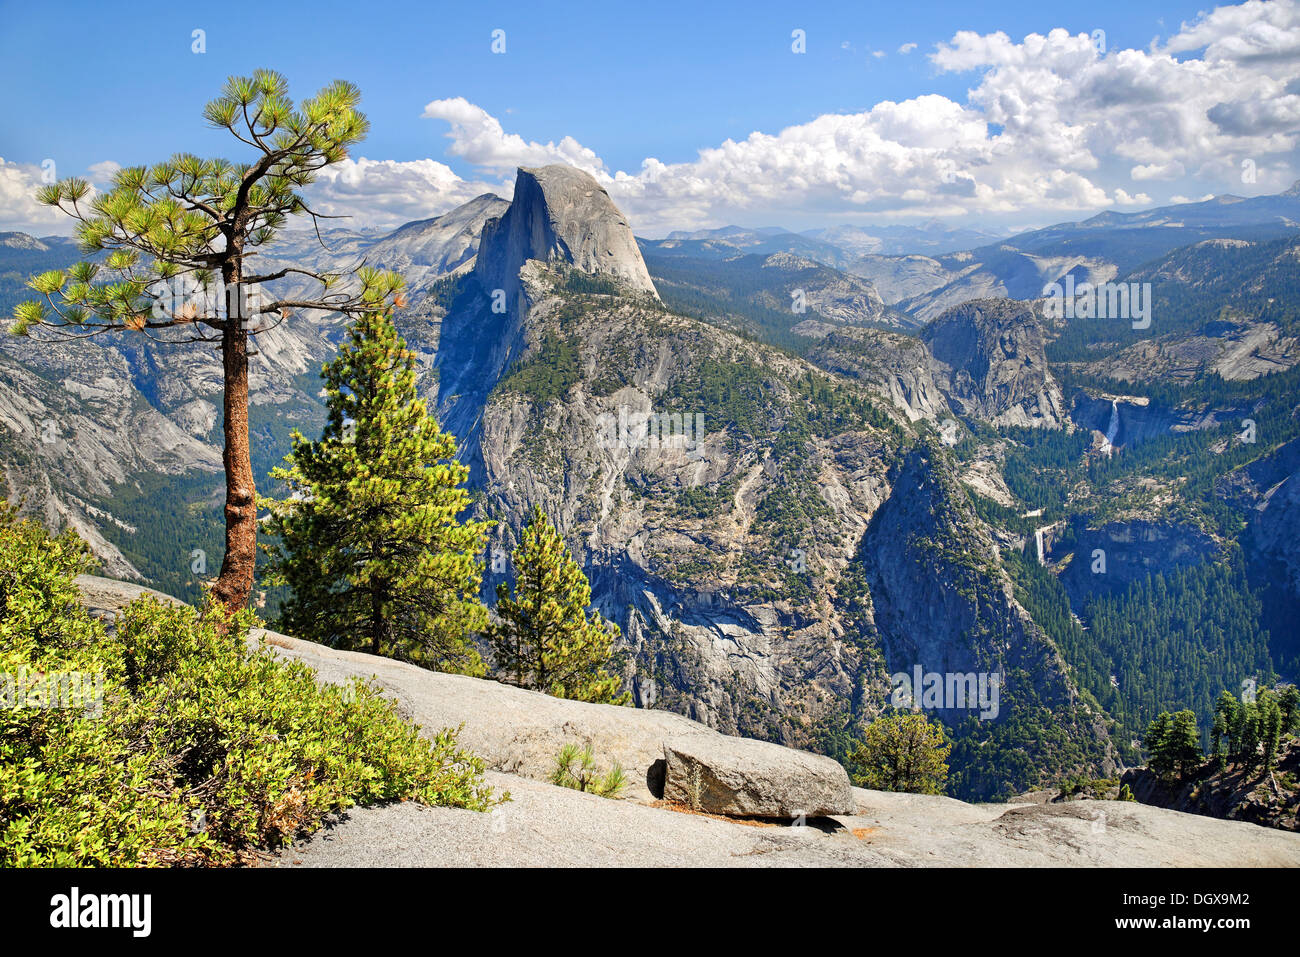 Punto ghiacciaio con vedute della valle di Yosemite con l'Half Dome, caduta primaverile e Nevada Fall, punto Clacier Foto Stock